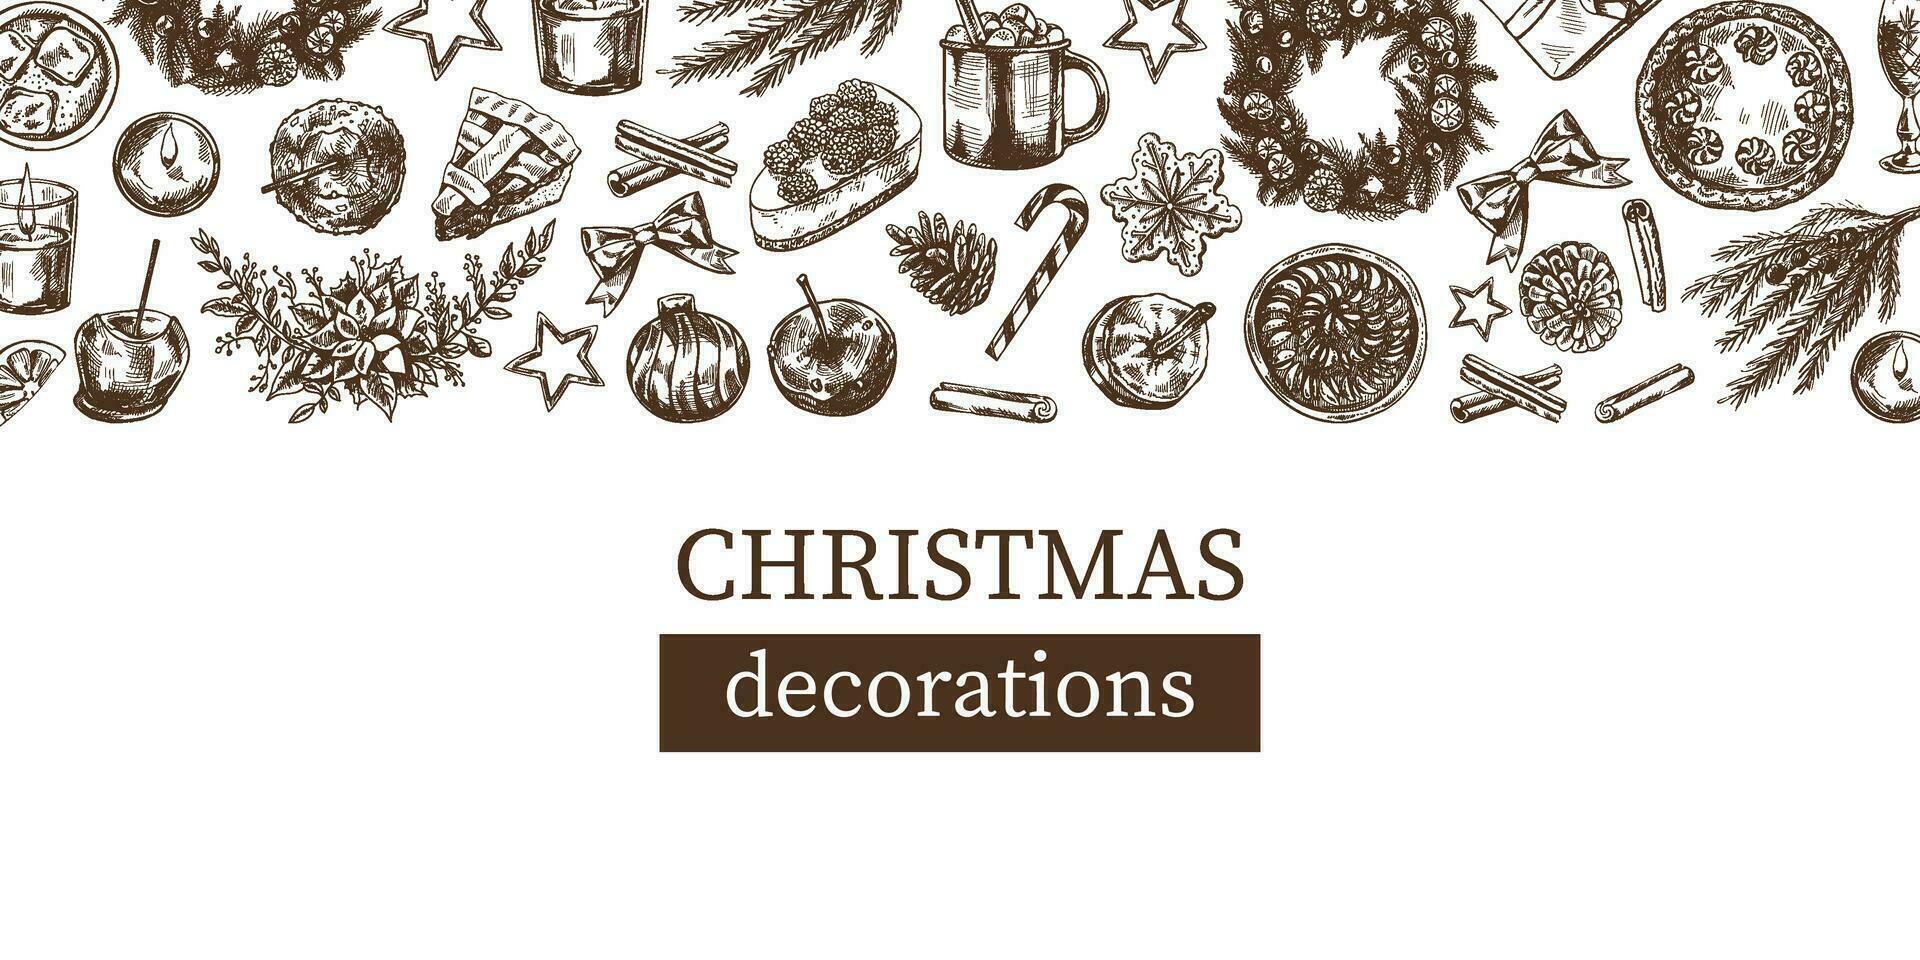 disegnato a mano Natale modello nel schizzo stile. festivo decorazione - ghirlanda, regalo, dolci, cibo, Natale albero arredamento, bevande e spezie schizzi. Vintage ▾ design con un vuoto spazio. vettore